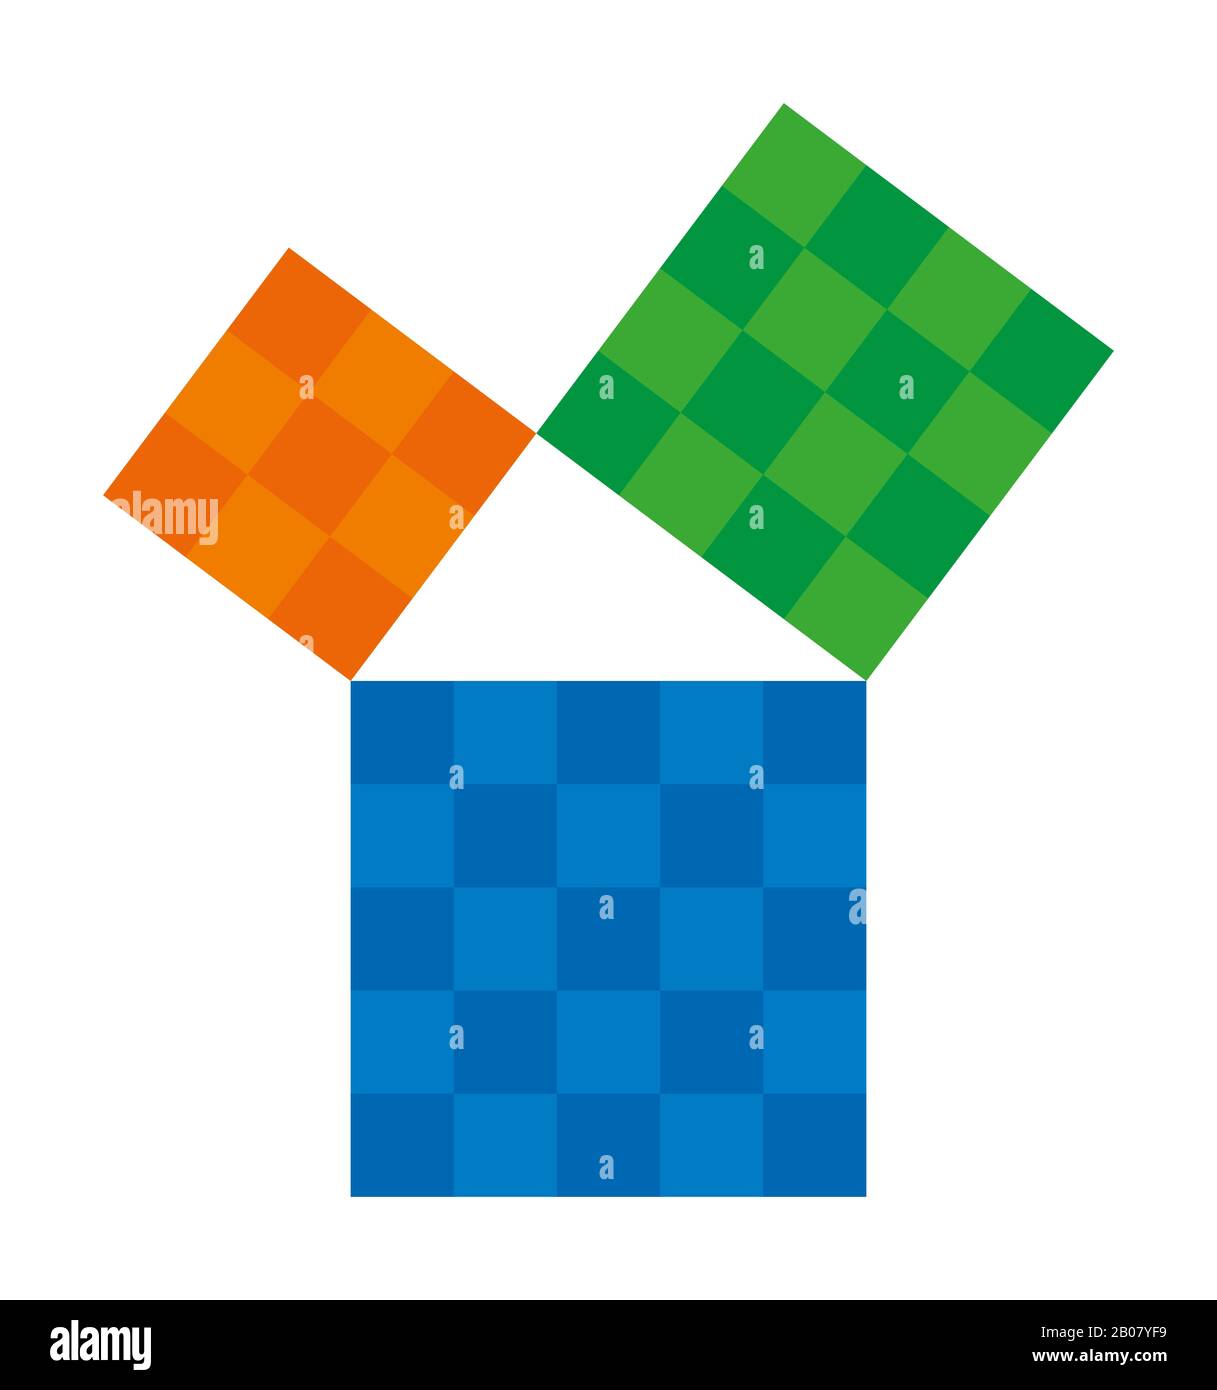 Teorema pitagórico mostrado con cuadrados coloridos. Teorema de Pitágoras. Relación de lados de un triángulo derecho. Foto de stock